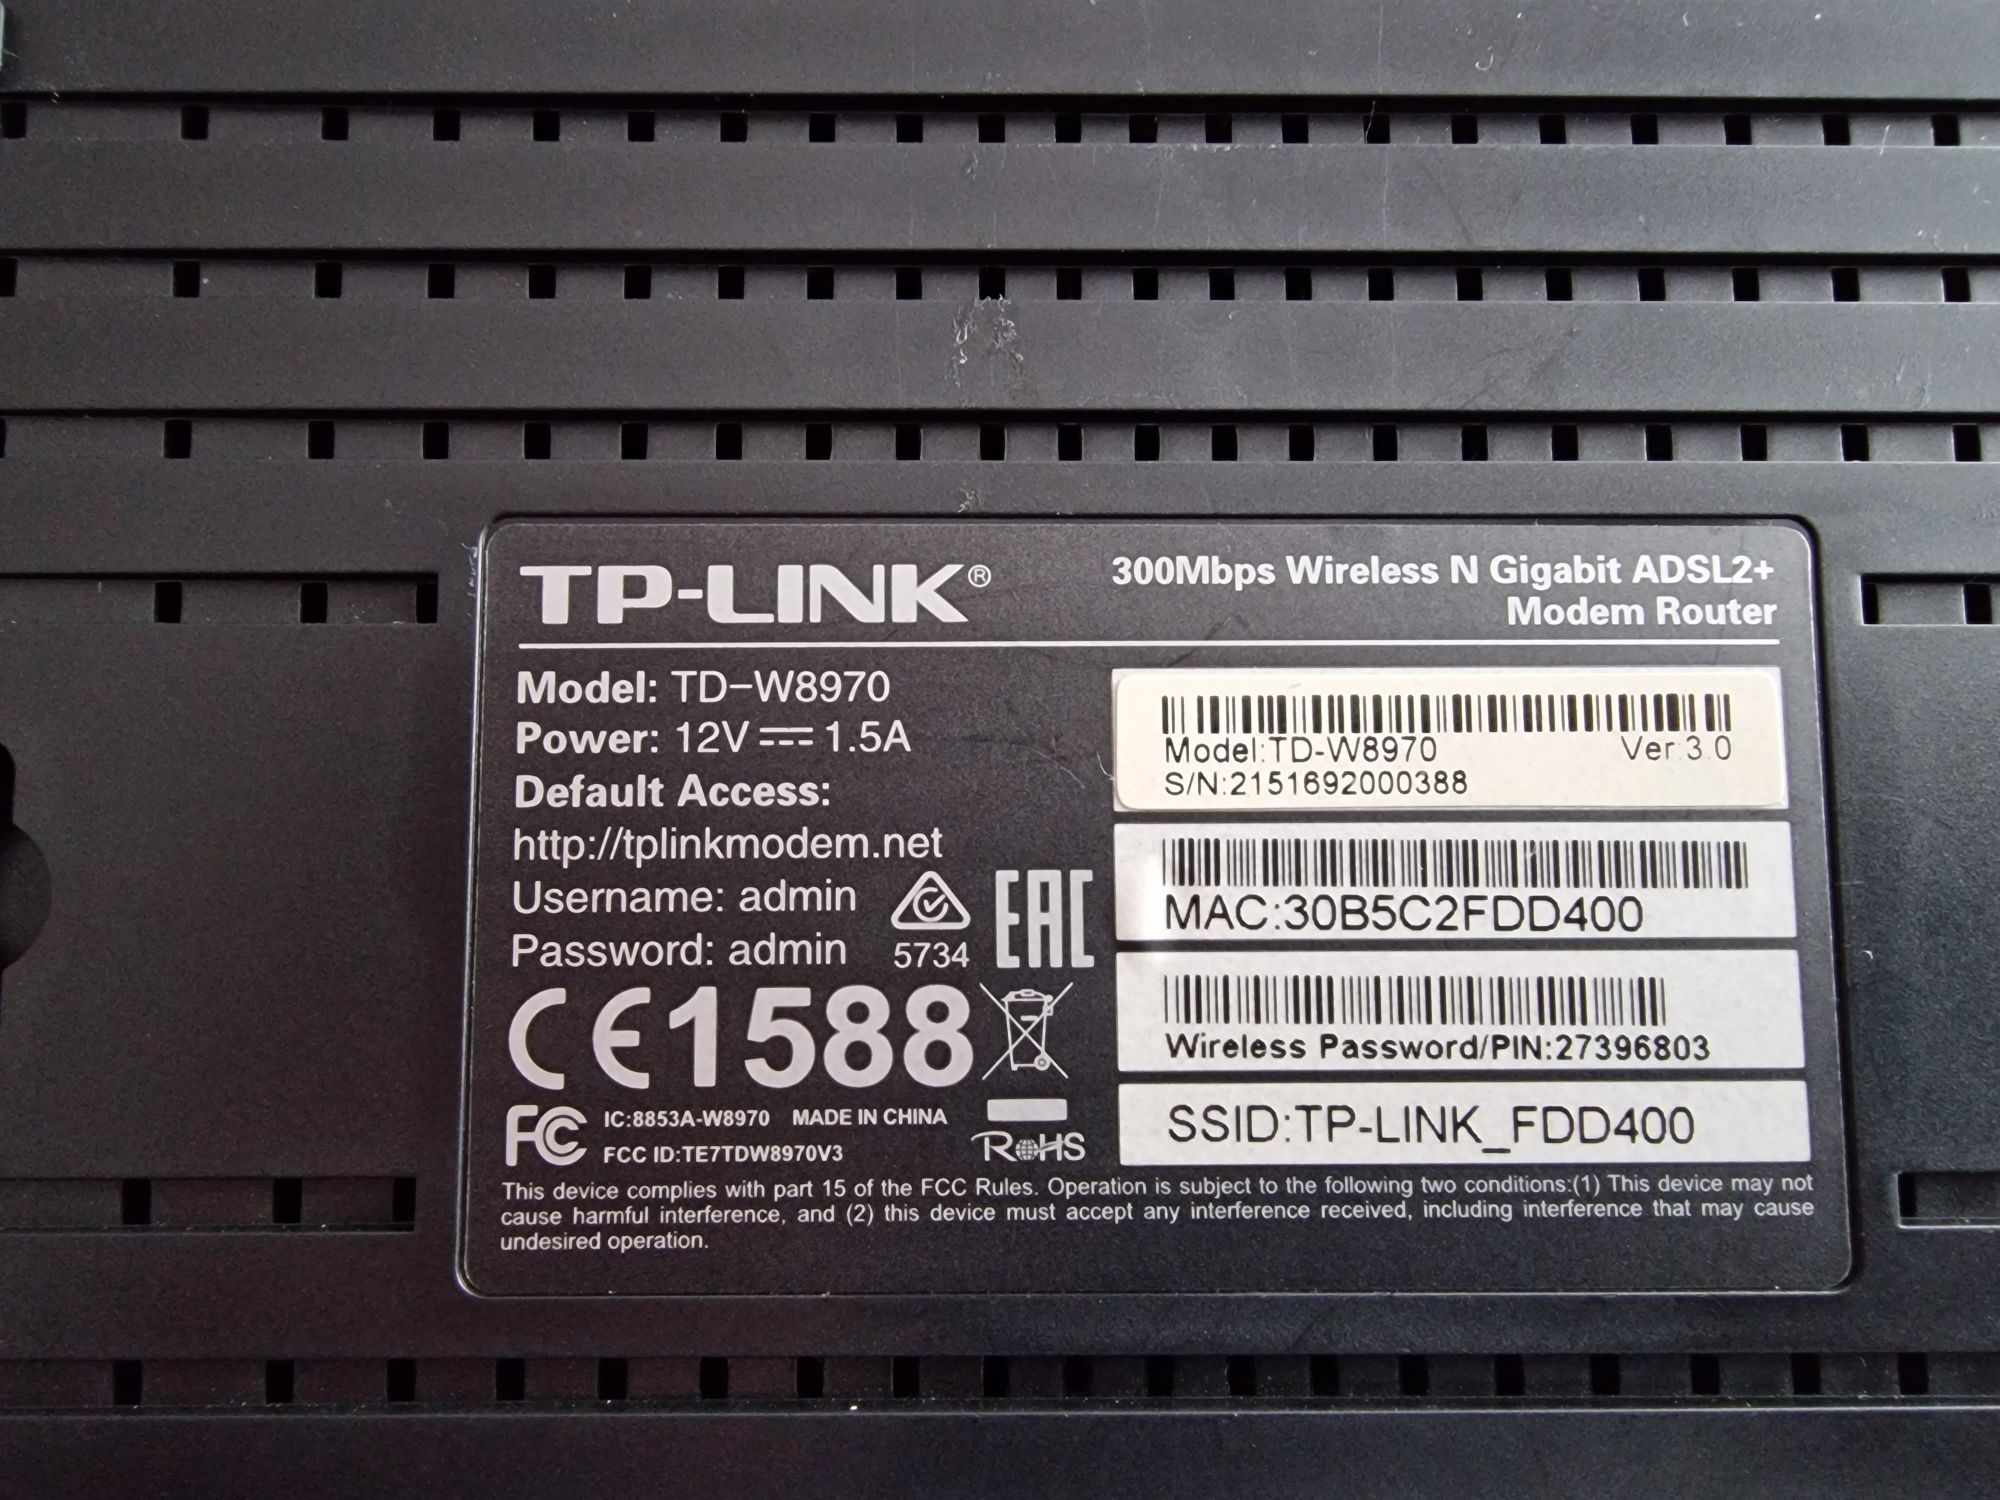 Vand TP-LINK TD-W8970 300Mbps Wireless N Gigabit ADSL2+ Modem Router